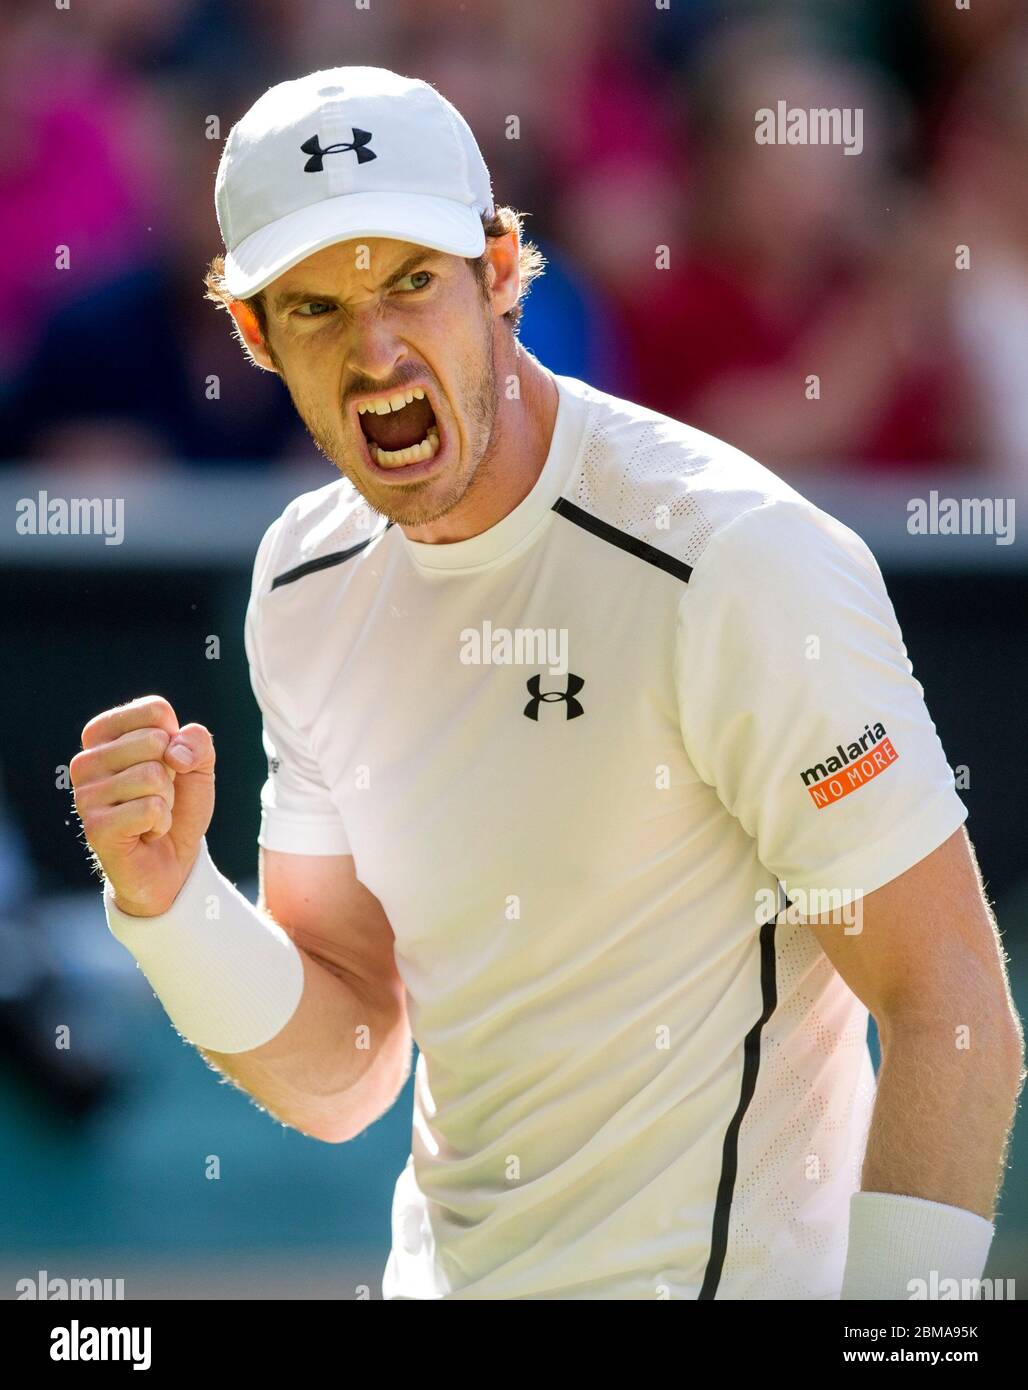 8 juillet 2016, Wimbledon, Londres, Mens Singles demi-finale Tomas Berdych contre Andy Murray. Andy Murray cria pendant le match sur le court du Centre. Banque D'Images